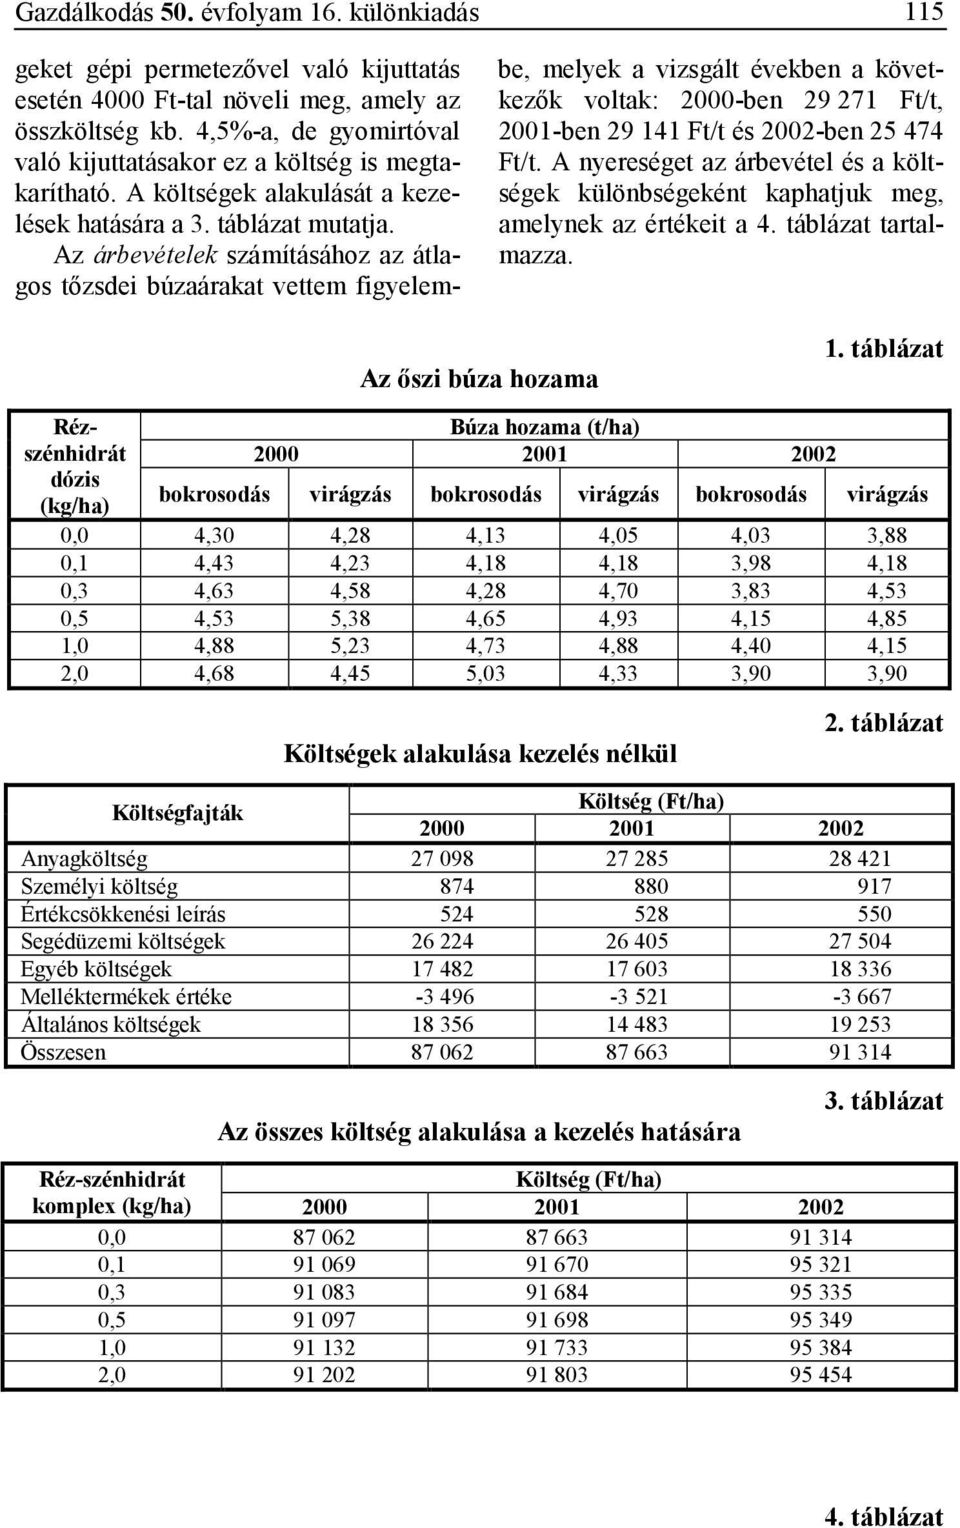 Az árbevételek számításához az átlagos tızsdei búzaárakat vettem figyelembe, melyek a vizsgált években a következık voltak: 2000-ben 29 271 Ft/t, 2001-ben 29 141 Ft/t és 2002-ben 25 474 Ft/t.